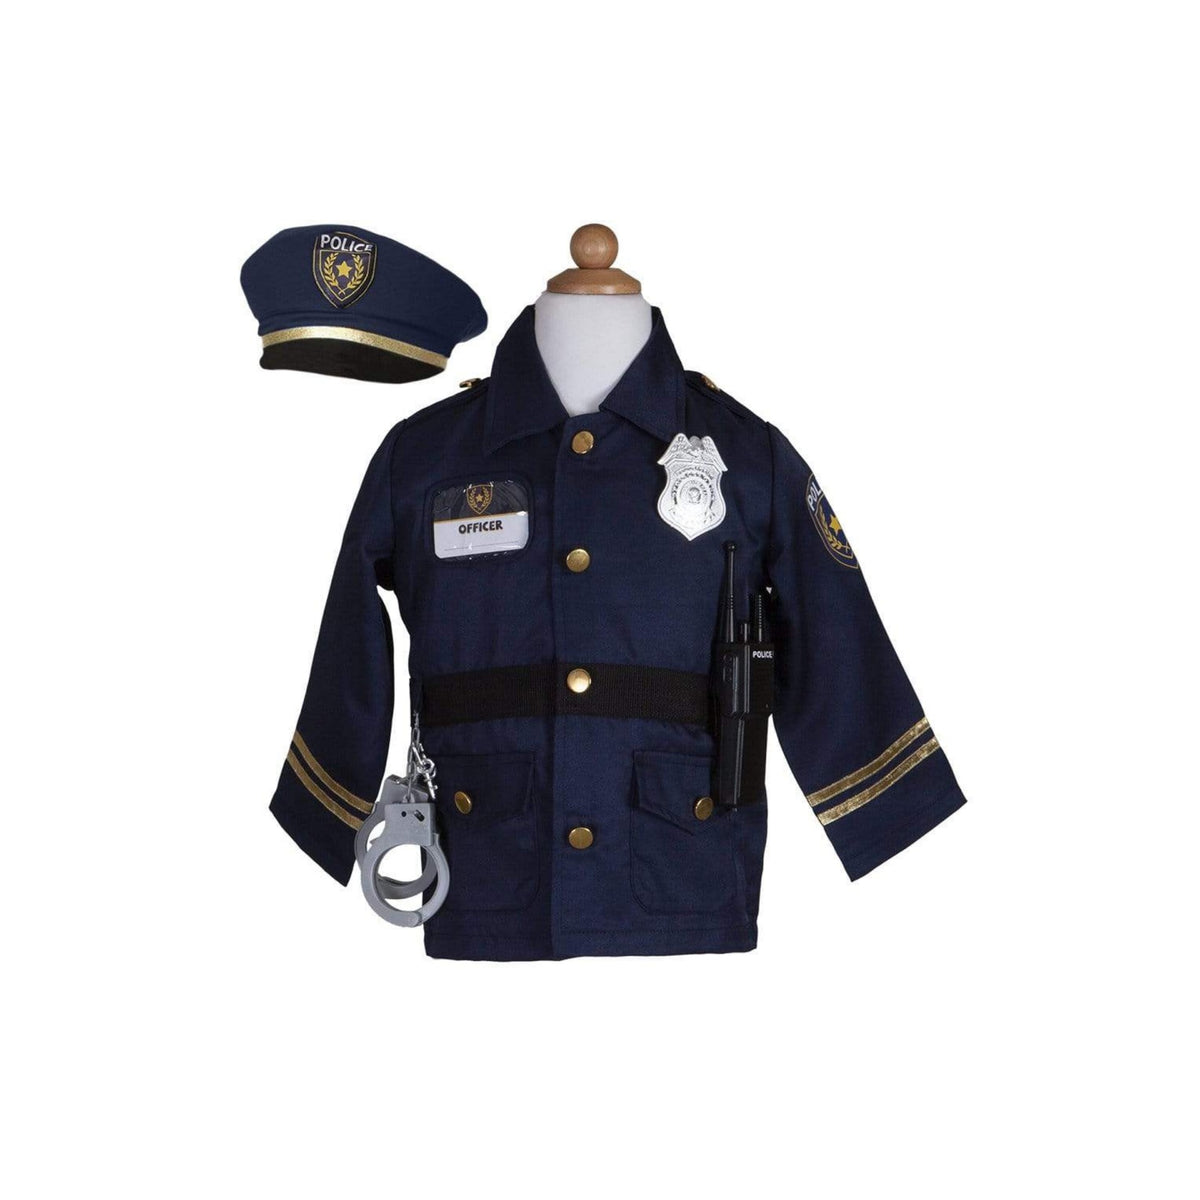 Das Polizisten-Set enthält: Jacke, Mütze, Handschellen, Walkie Talkie, Abzeichen und Namensschild.